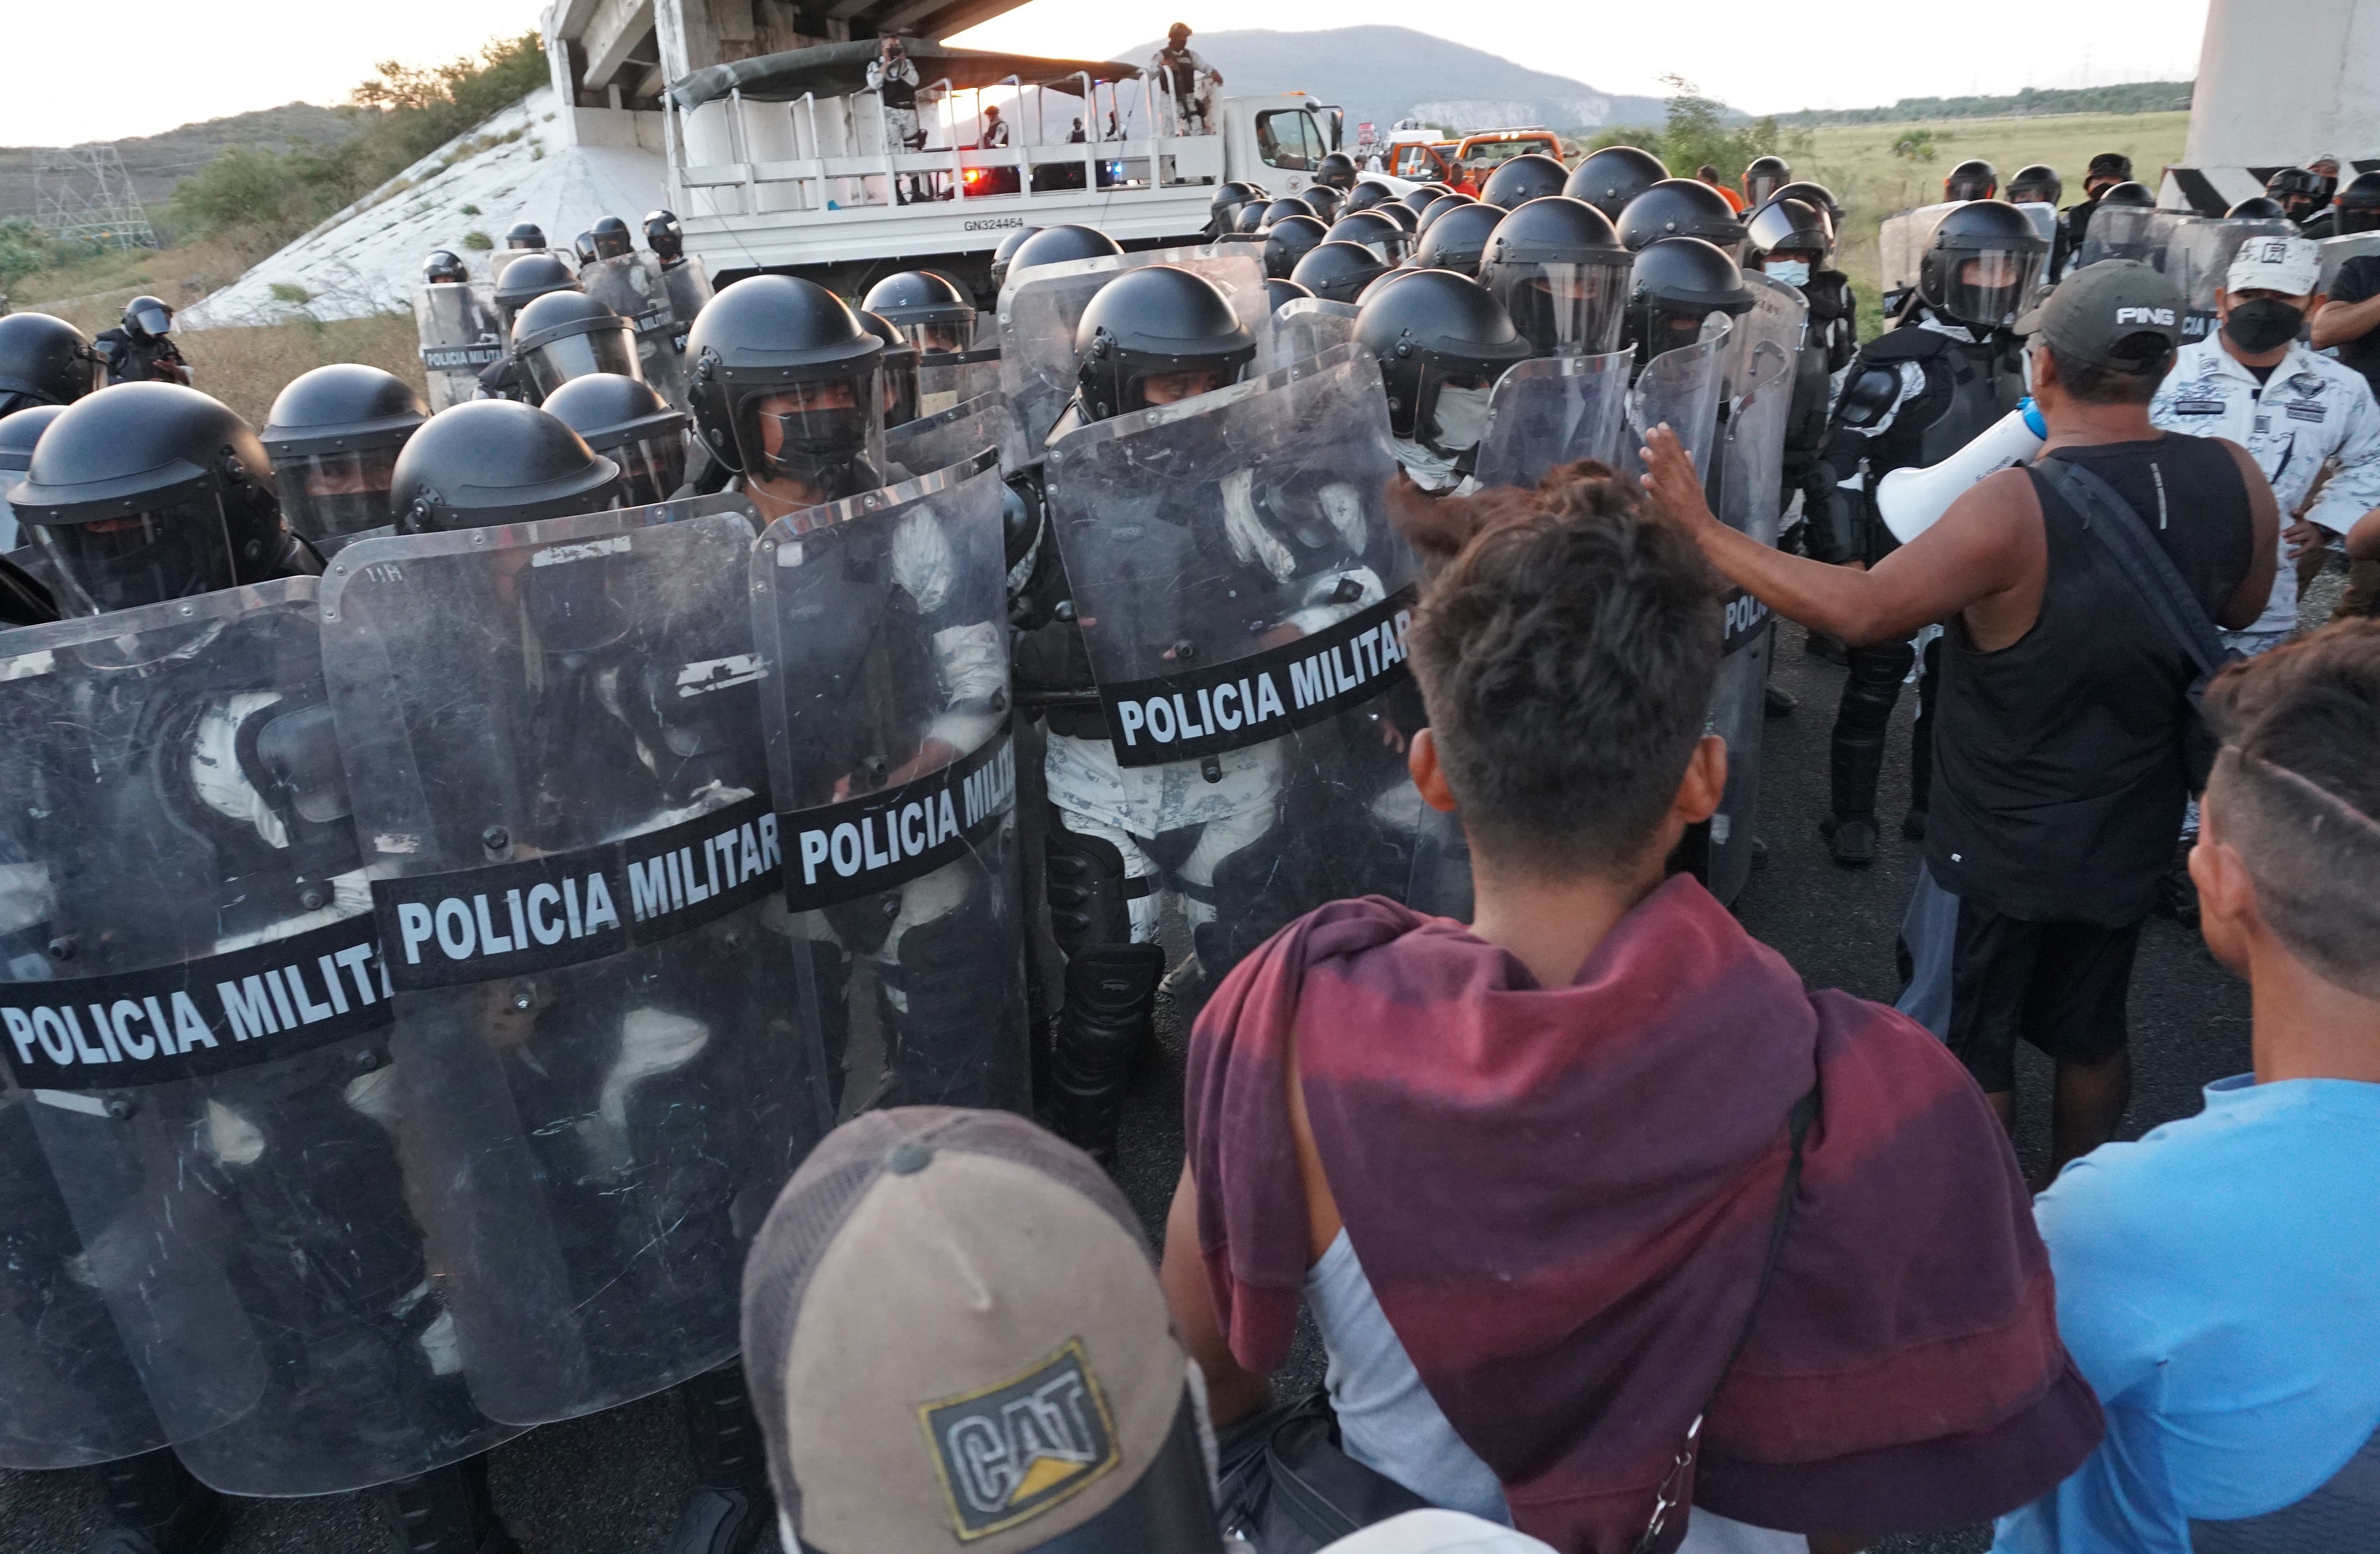 En los últimos años han aumentado en México los delitos con violencia y crímenes de la delincuencia organizada. (Foto: EFE/Daniel Ricardez)
